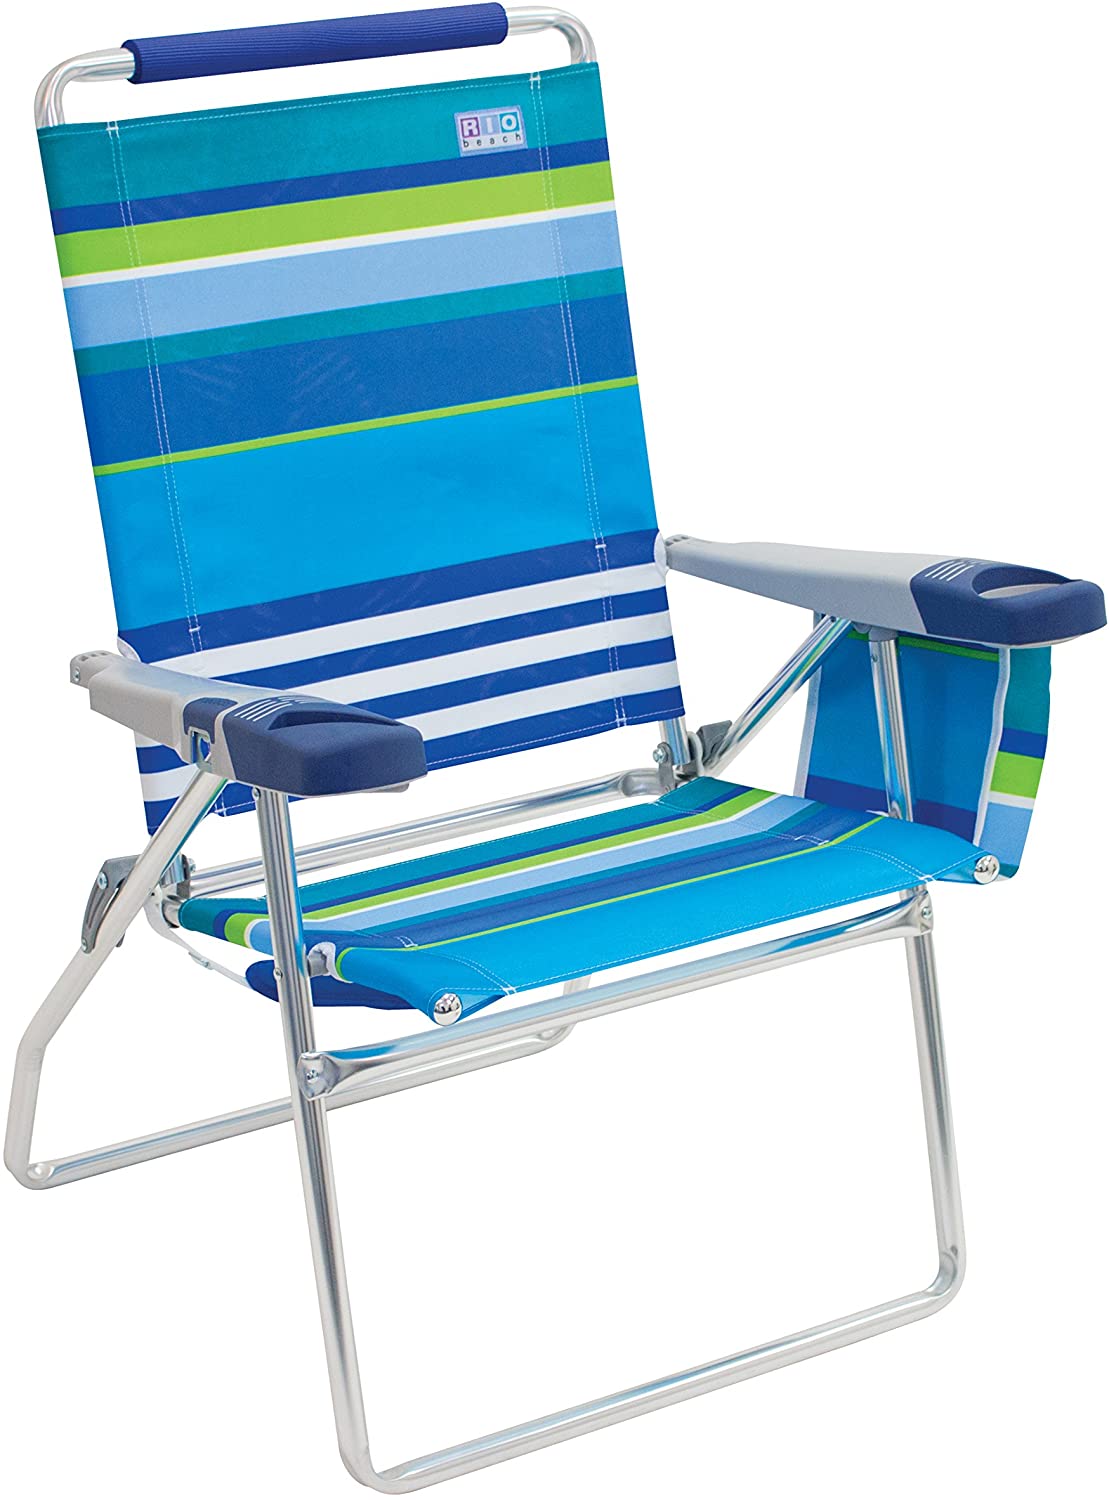 High Beach Chair